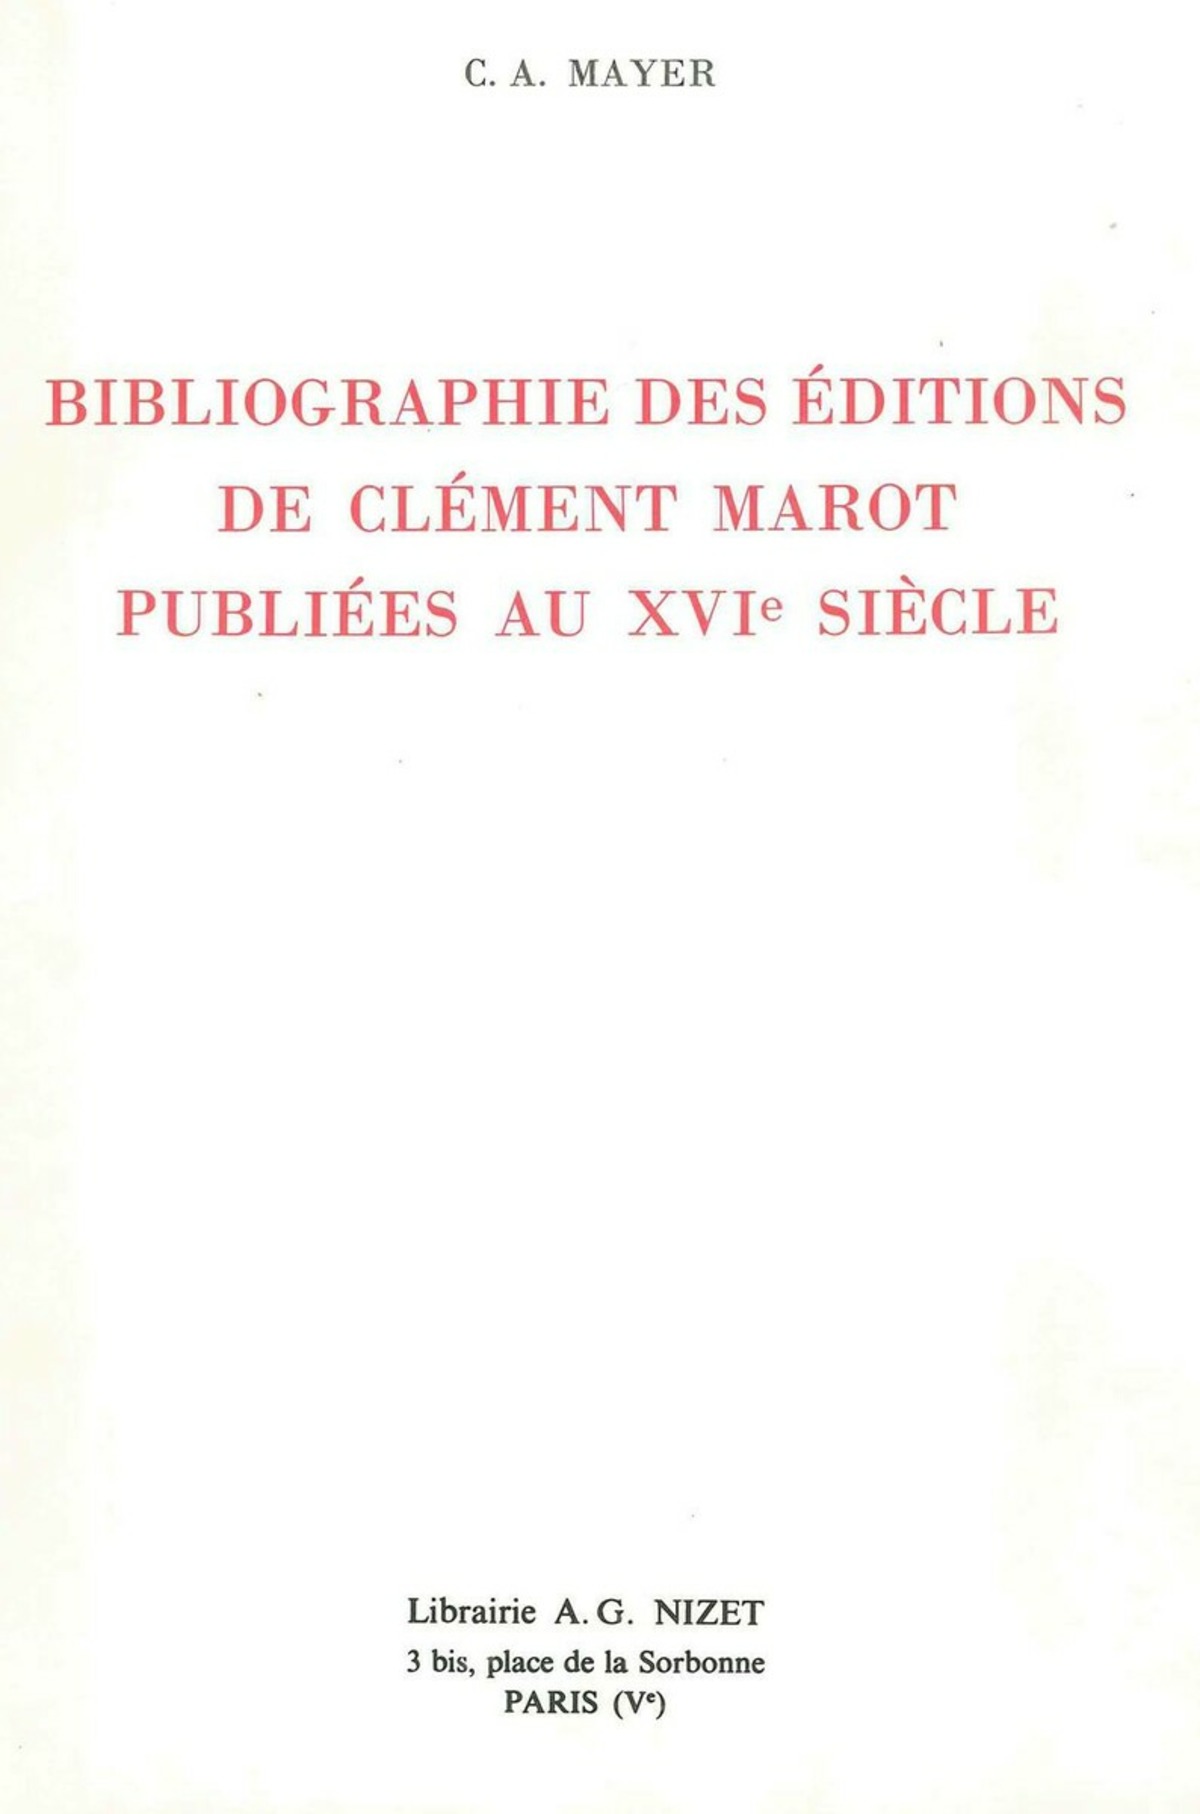 Bibliographie des éditions de Clément Marot publiées au XVIe siècle